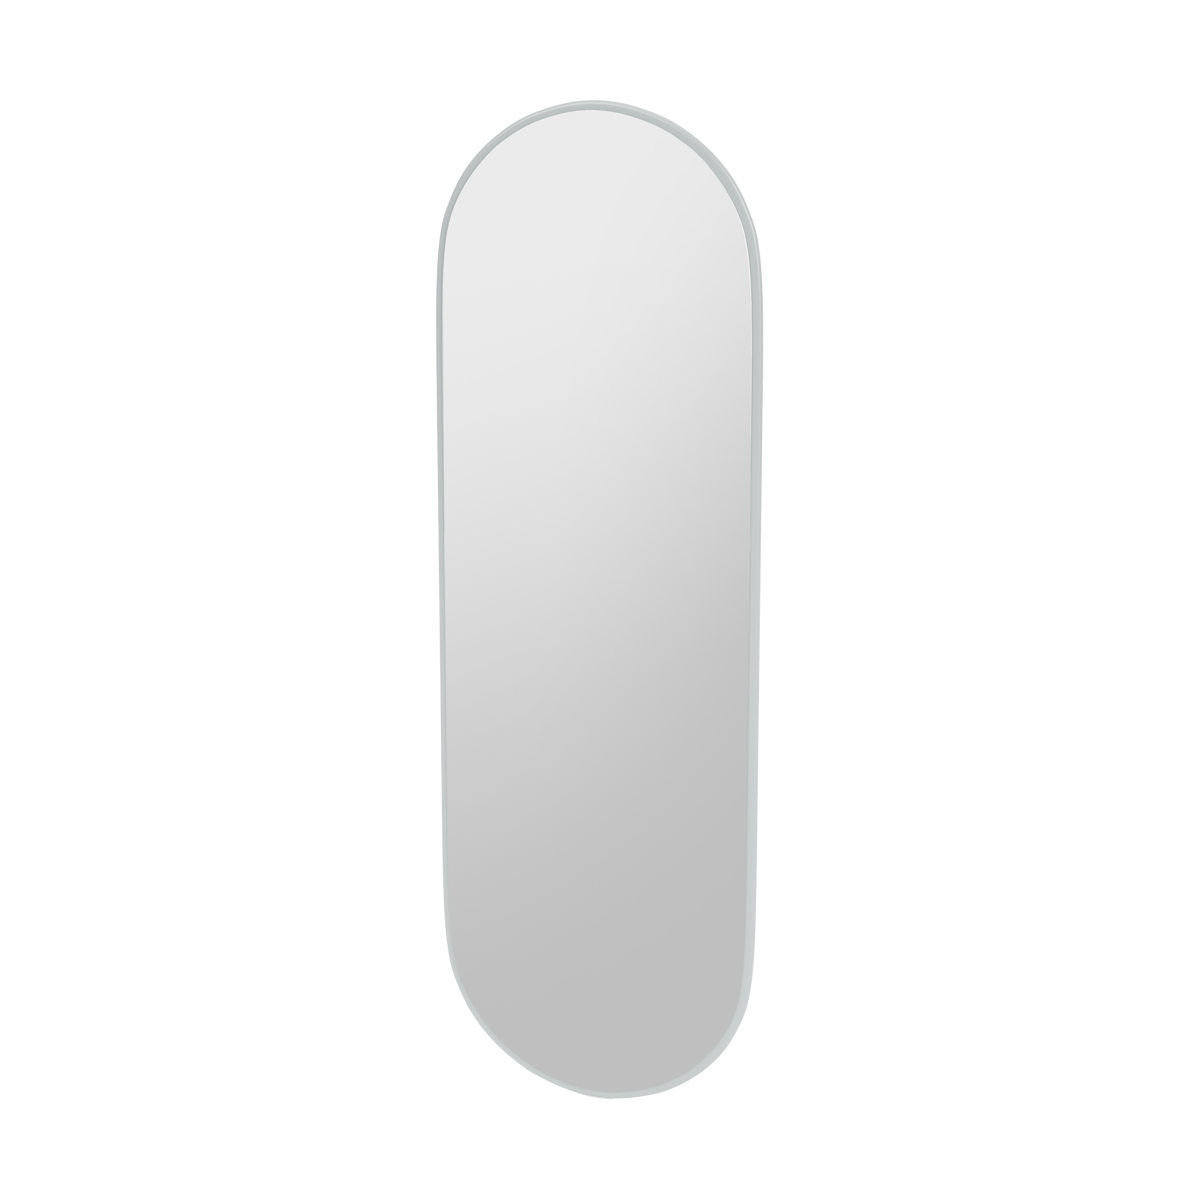 Montana FIGUUR Mirror Spiegel - SP824R Oyster